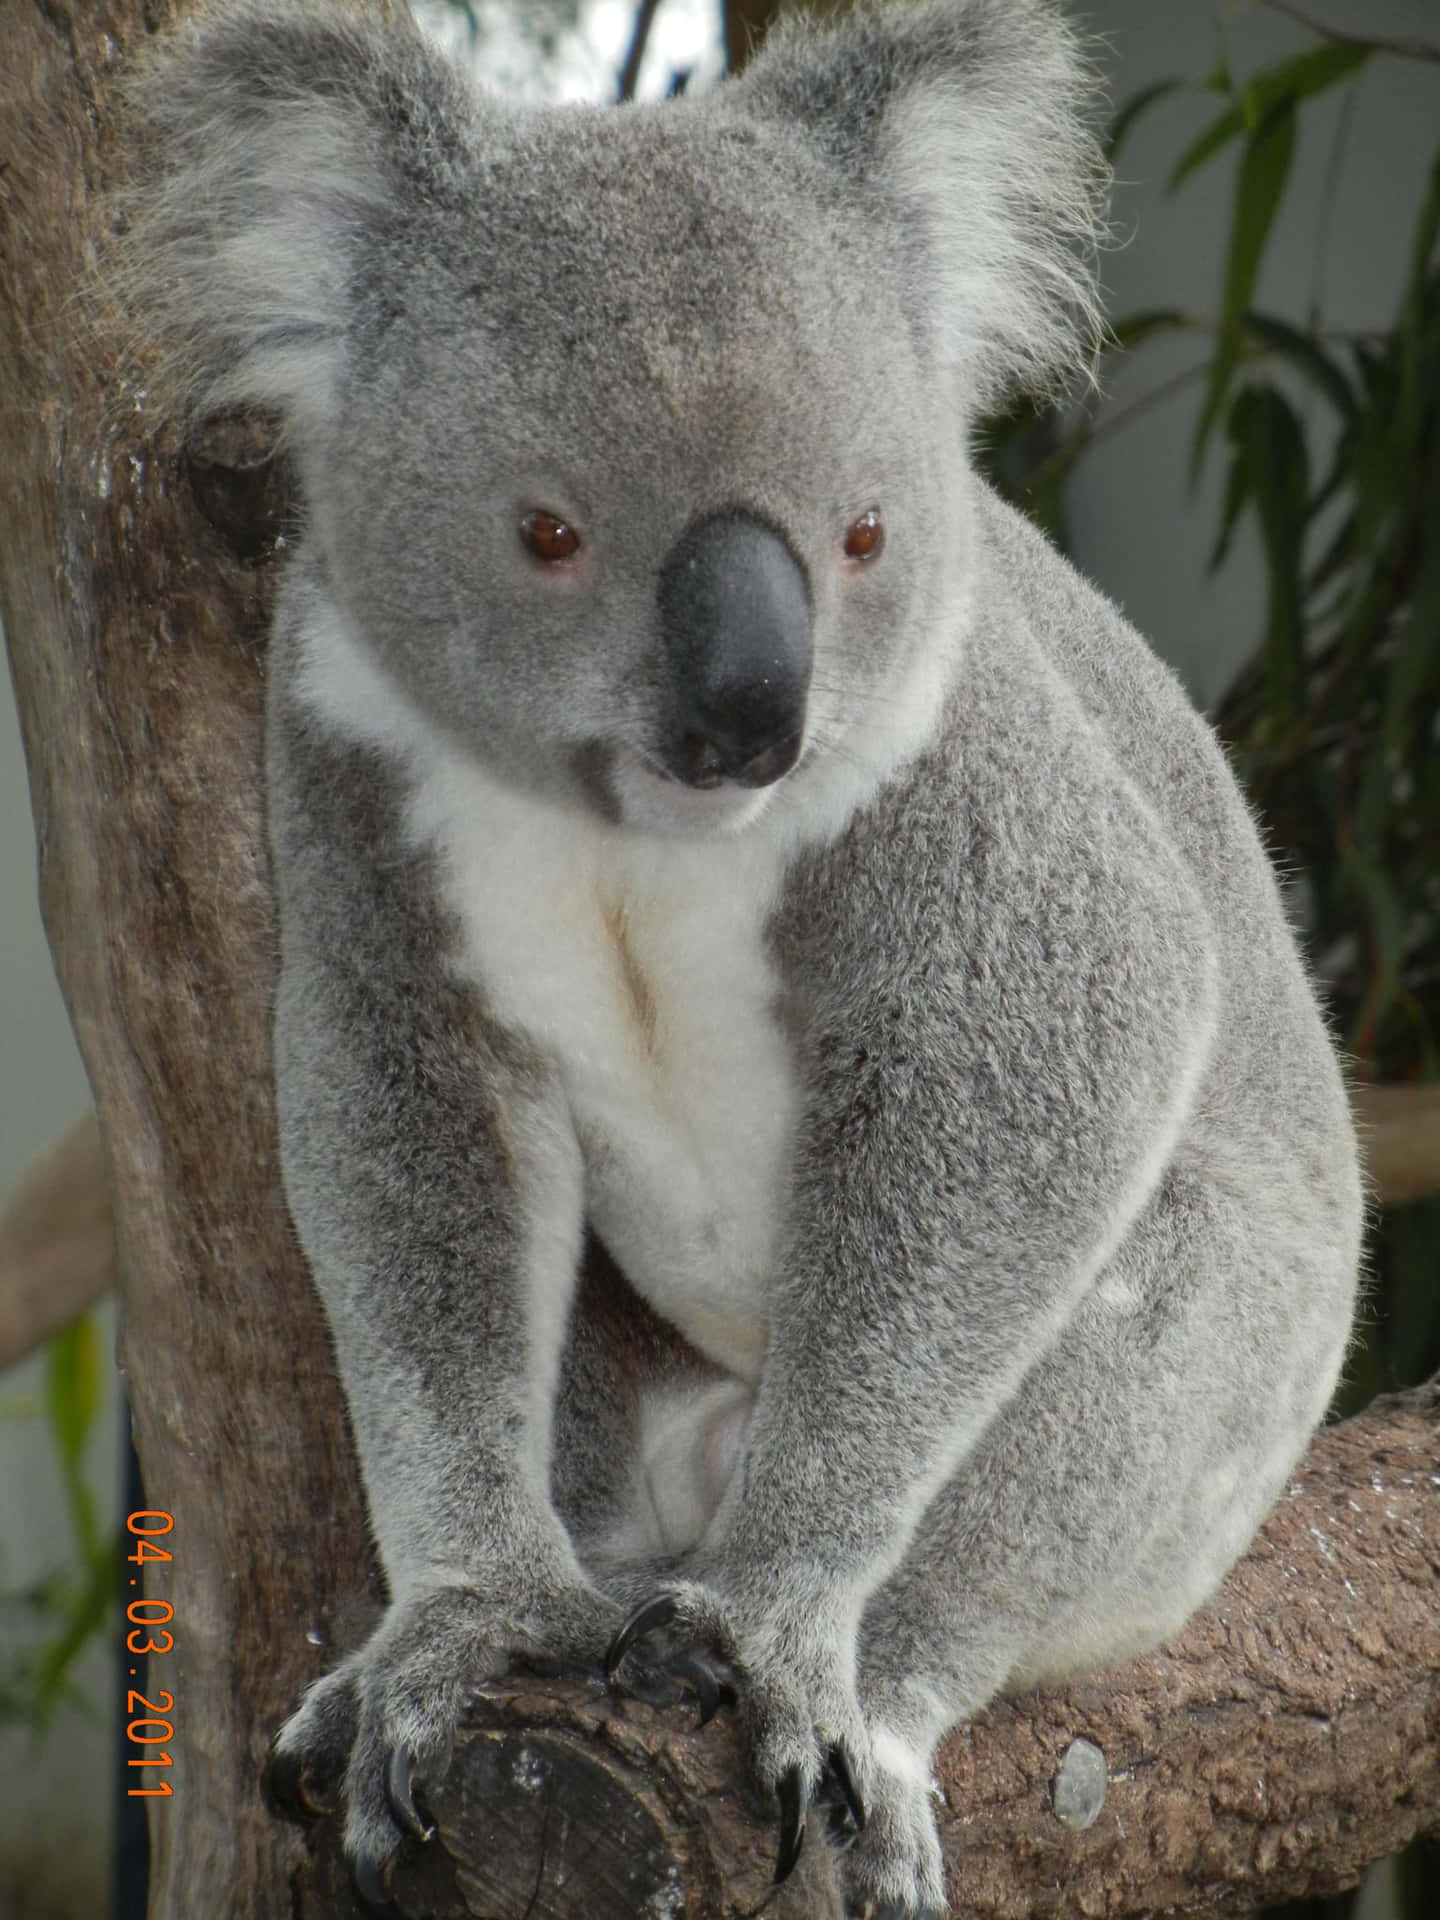 A Koala Bear Sitting on a Branch in Australia